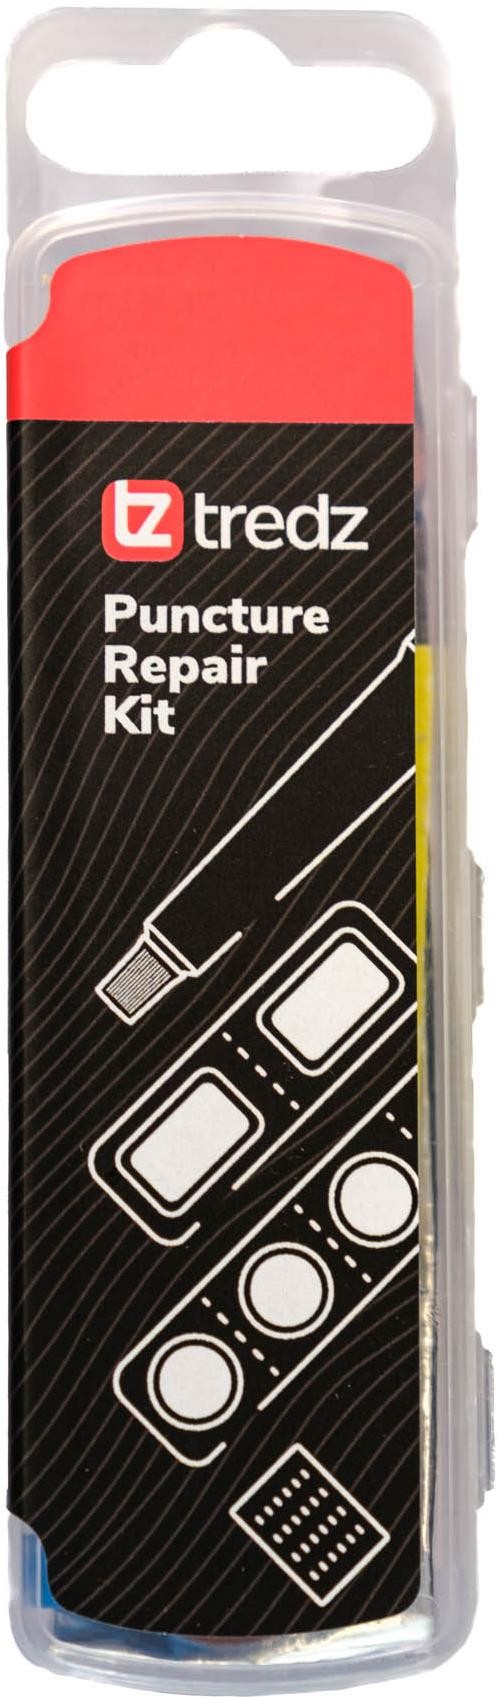 Puncture Repair Kit image 0